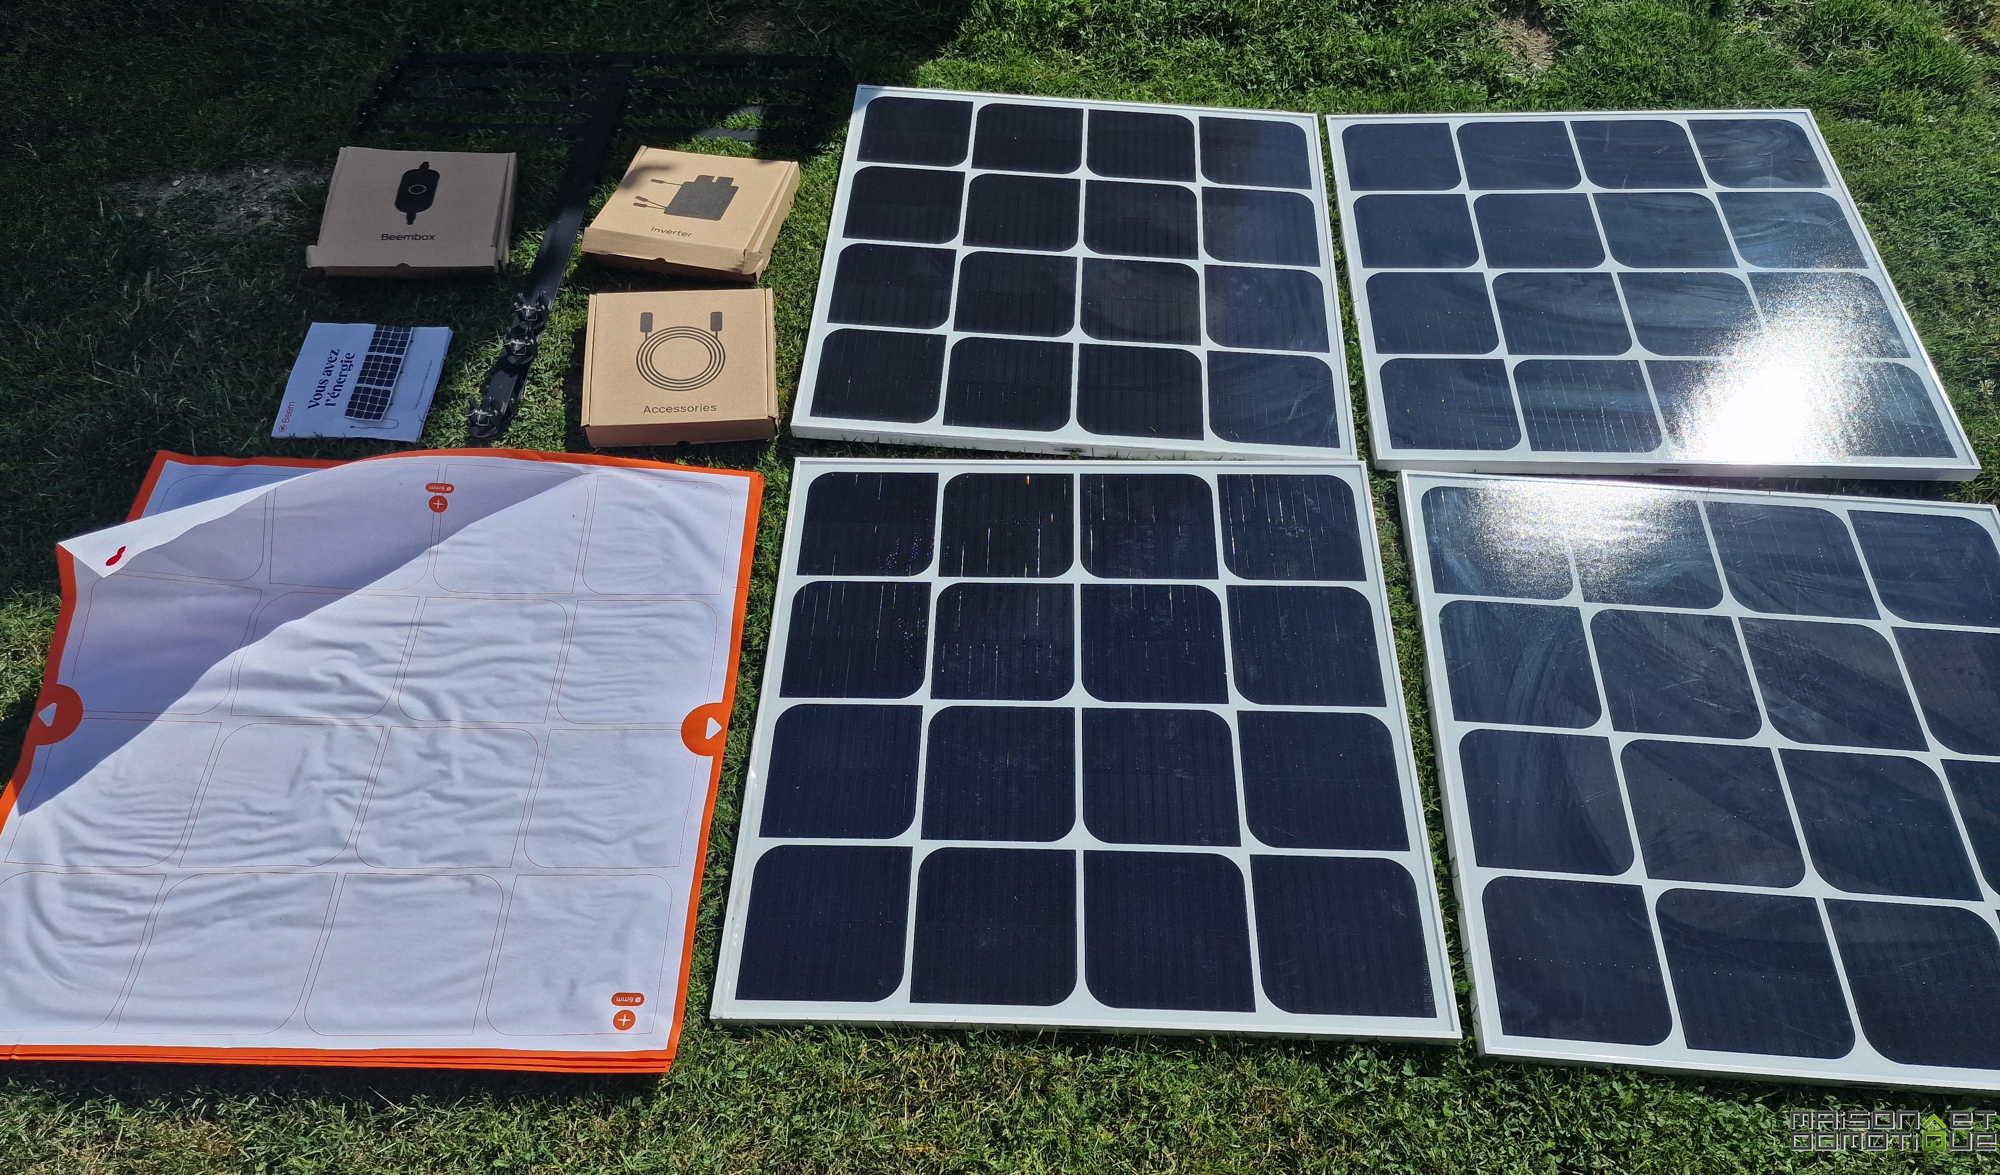 Ce nouveau kit solaire vous permettra d'installer vous-mêmes des